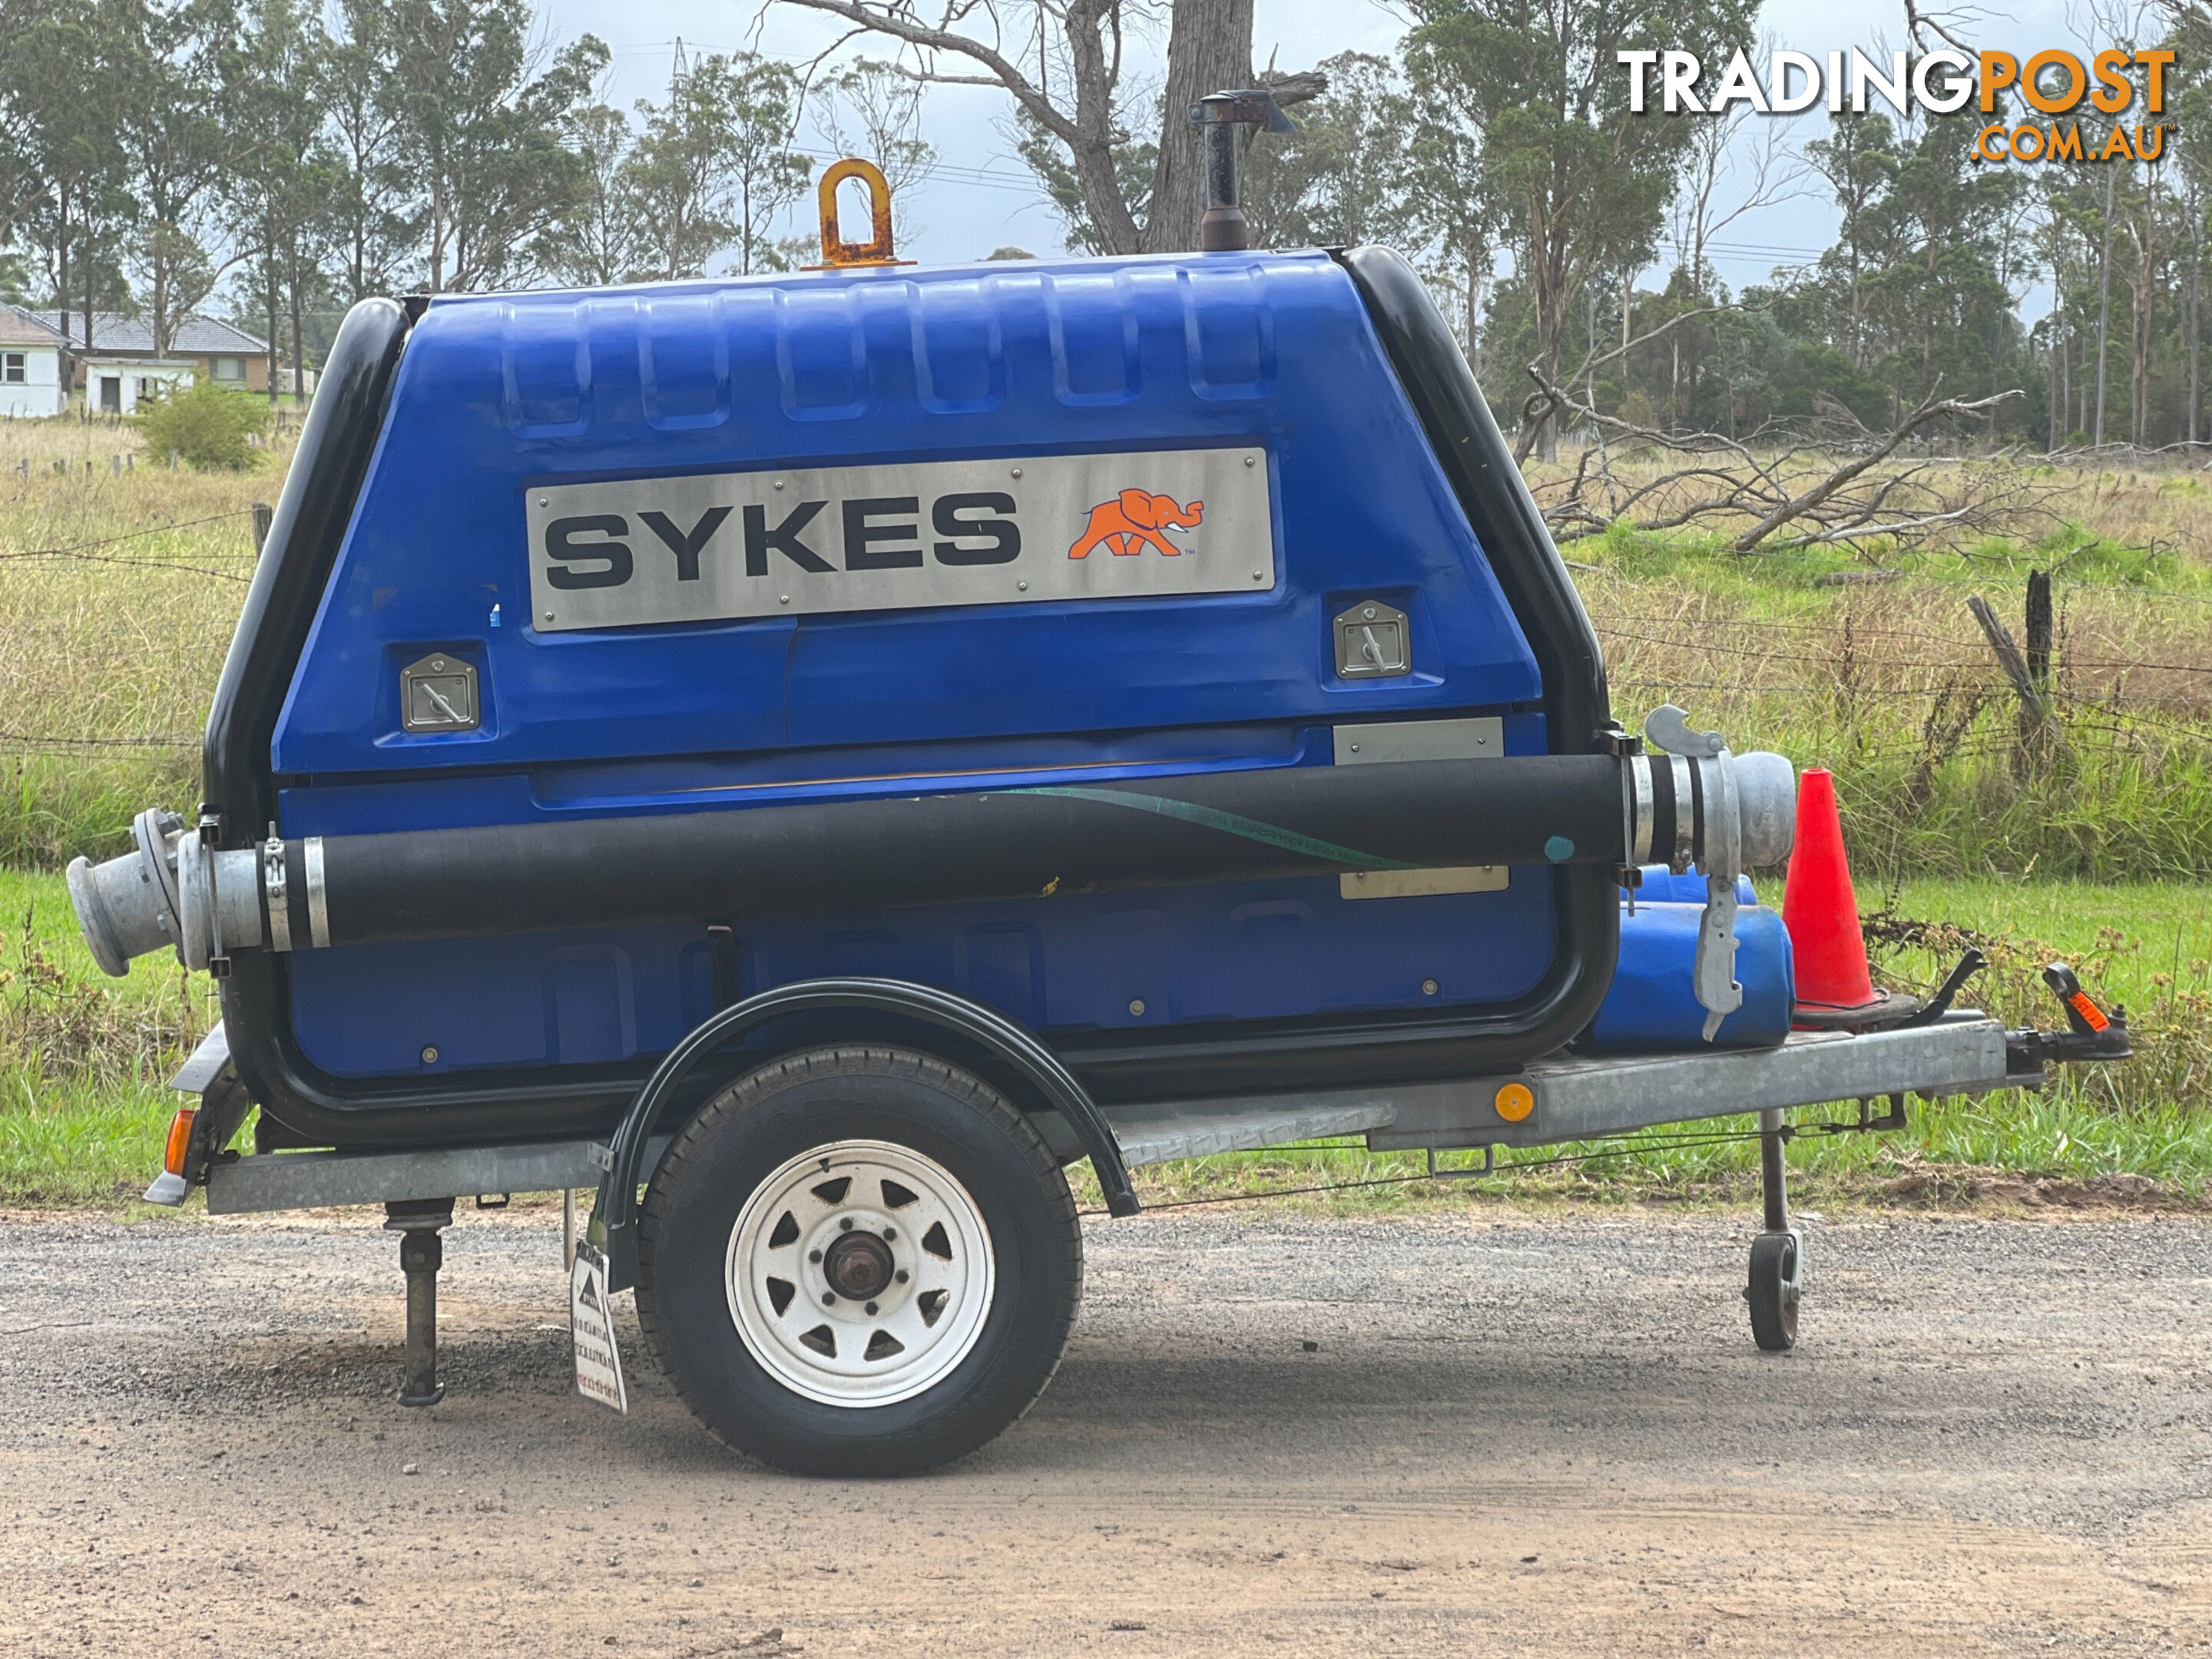 Sykes Yakka 150 Pump Irrigation/Water